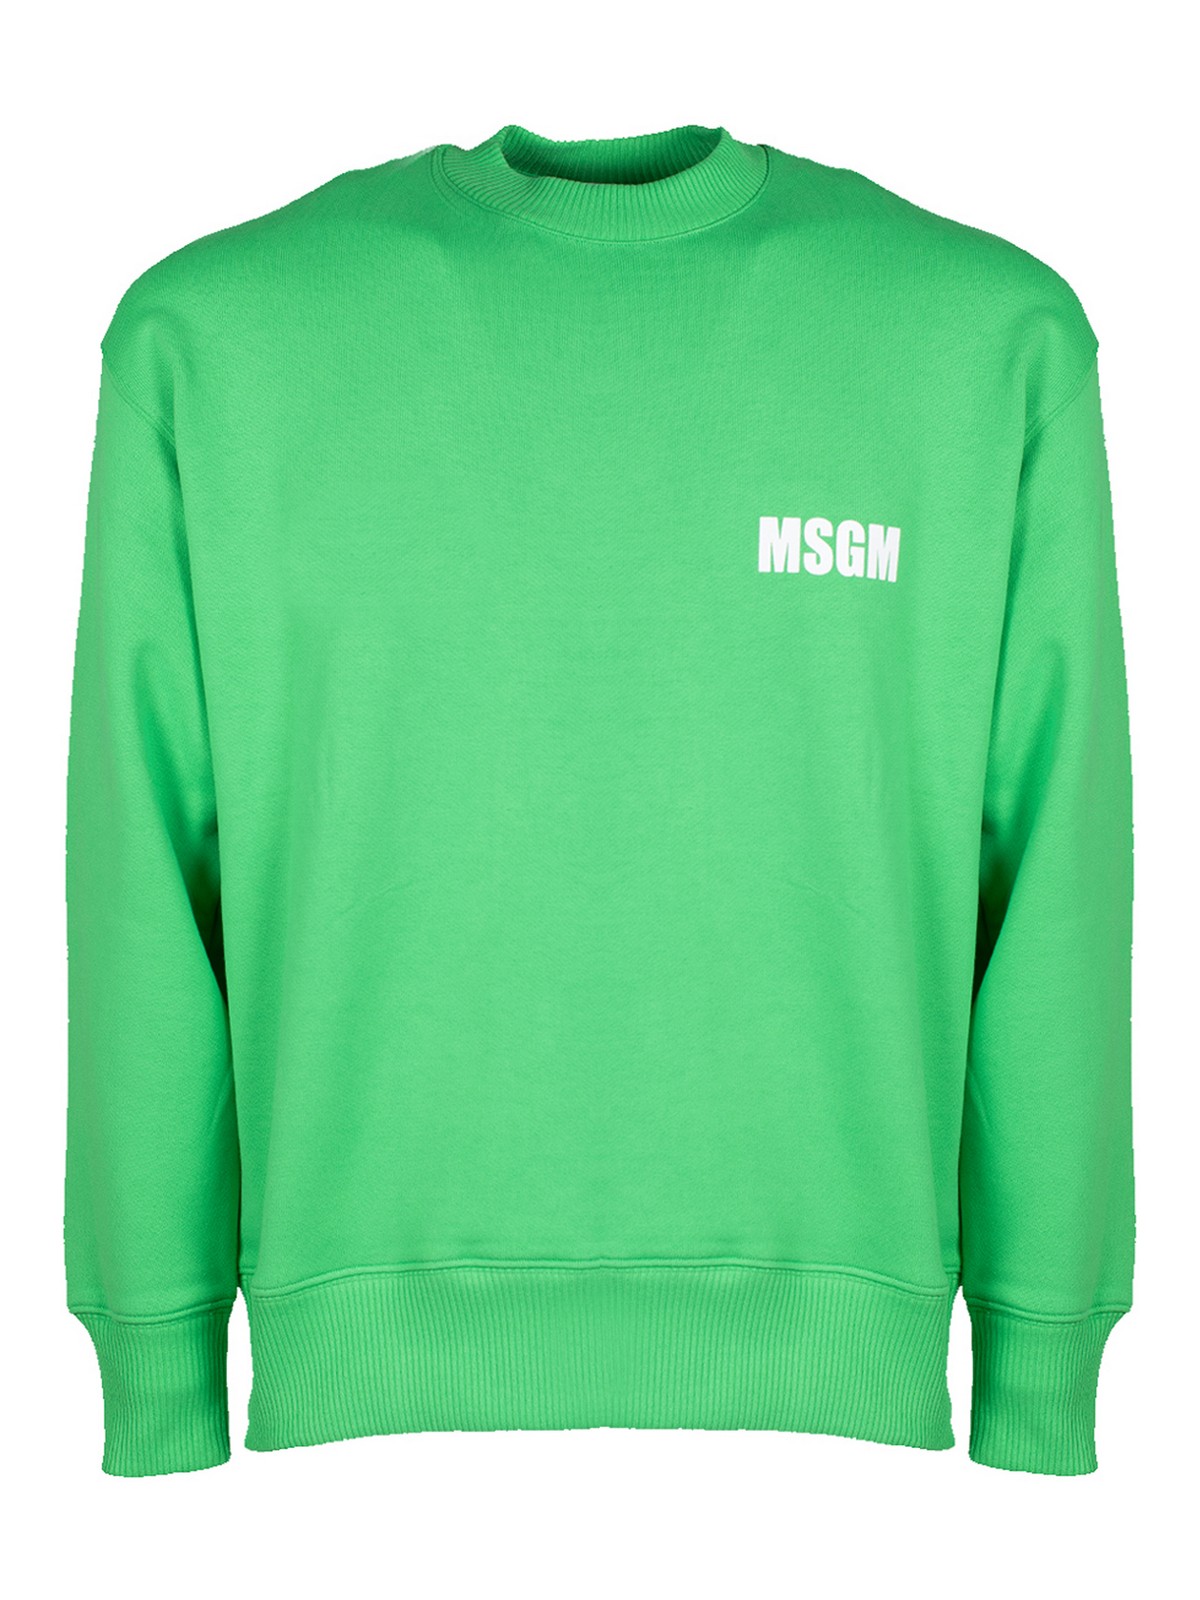 Msgm Never Look Sweatshirt In Green